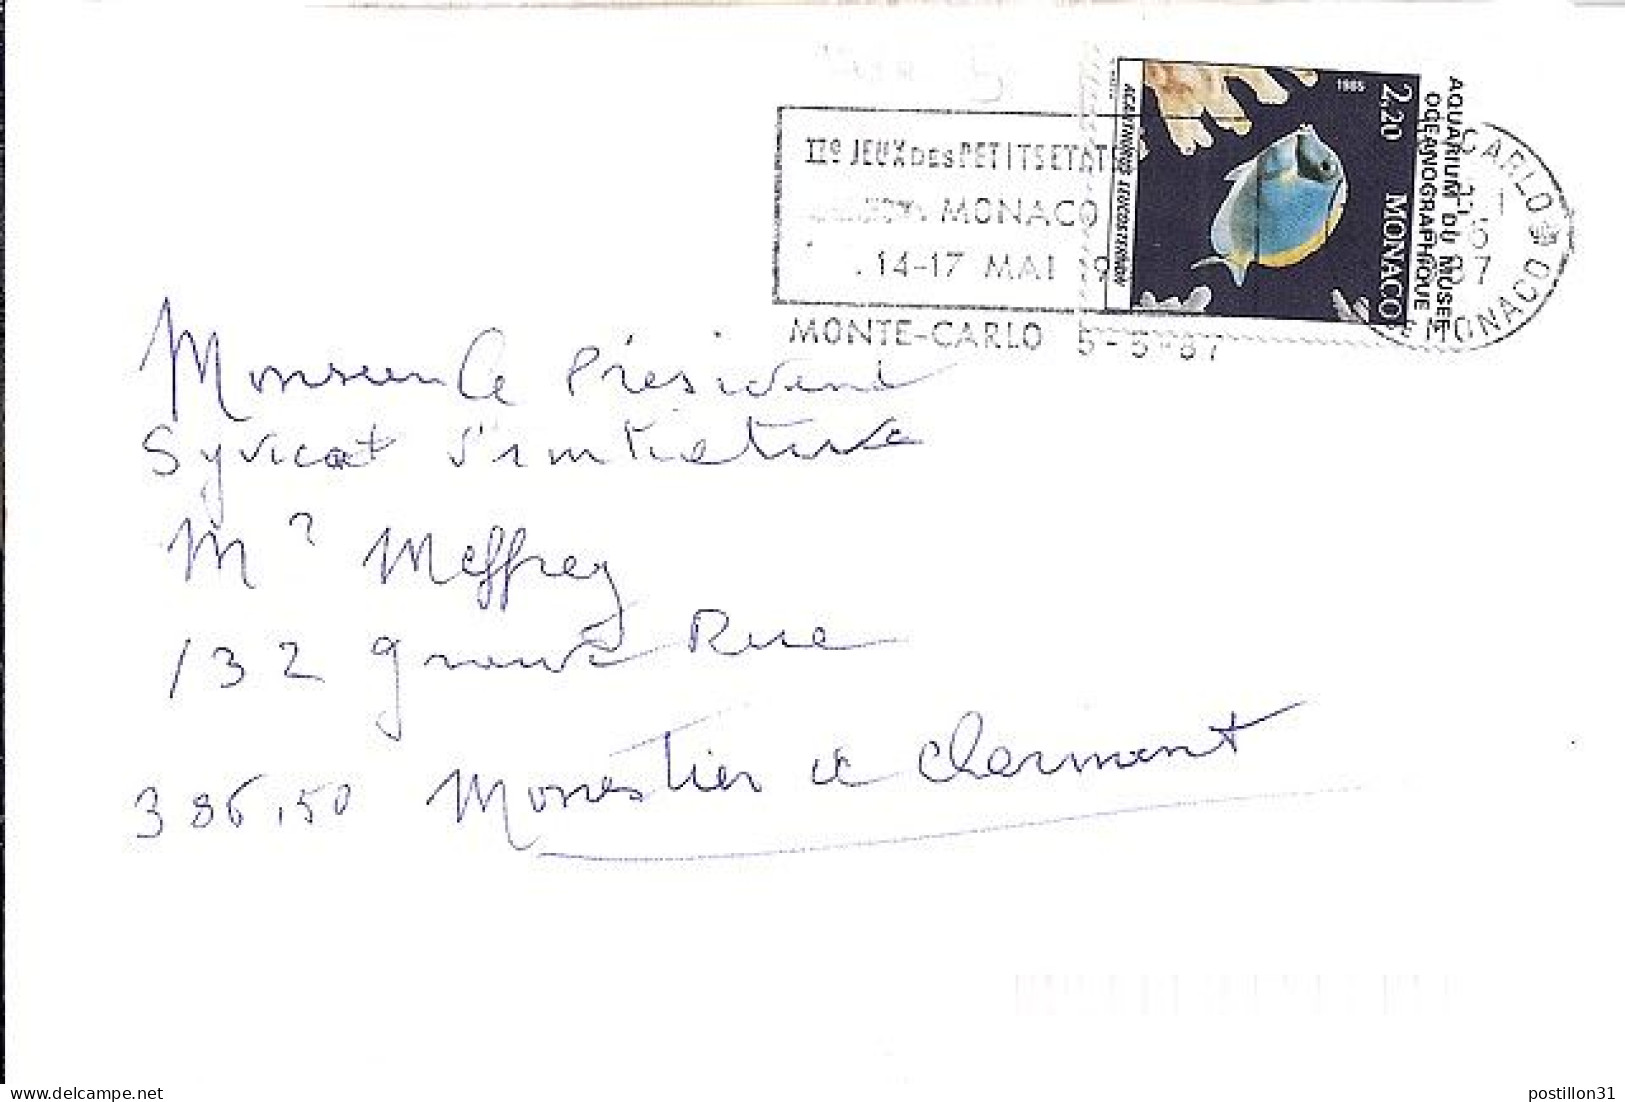 MONACO N° 1484 S/L. DE MONTE CARLO/5.5.87  POUR FRANCE - Covers & Documents